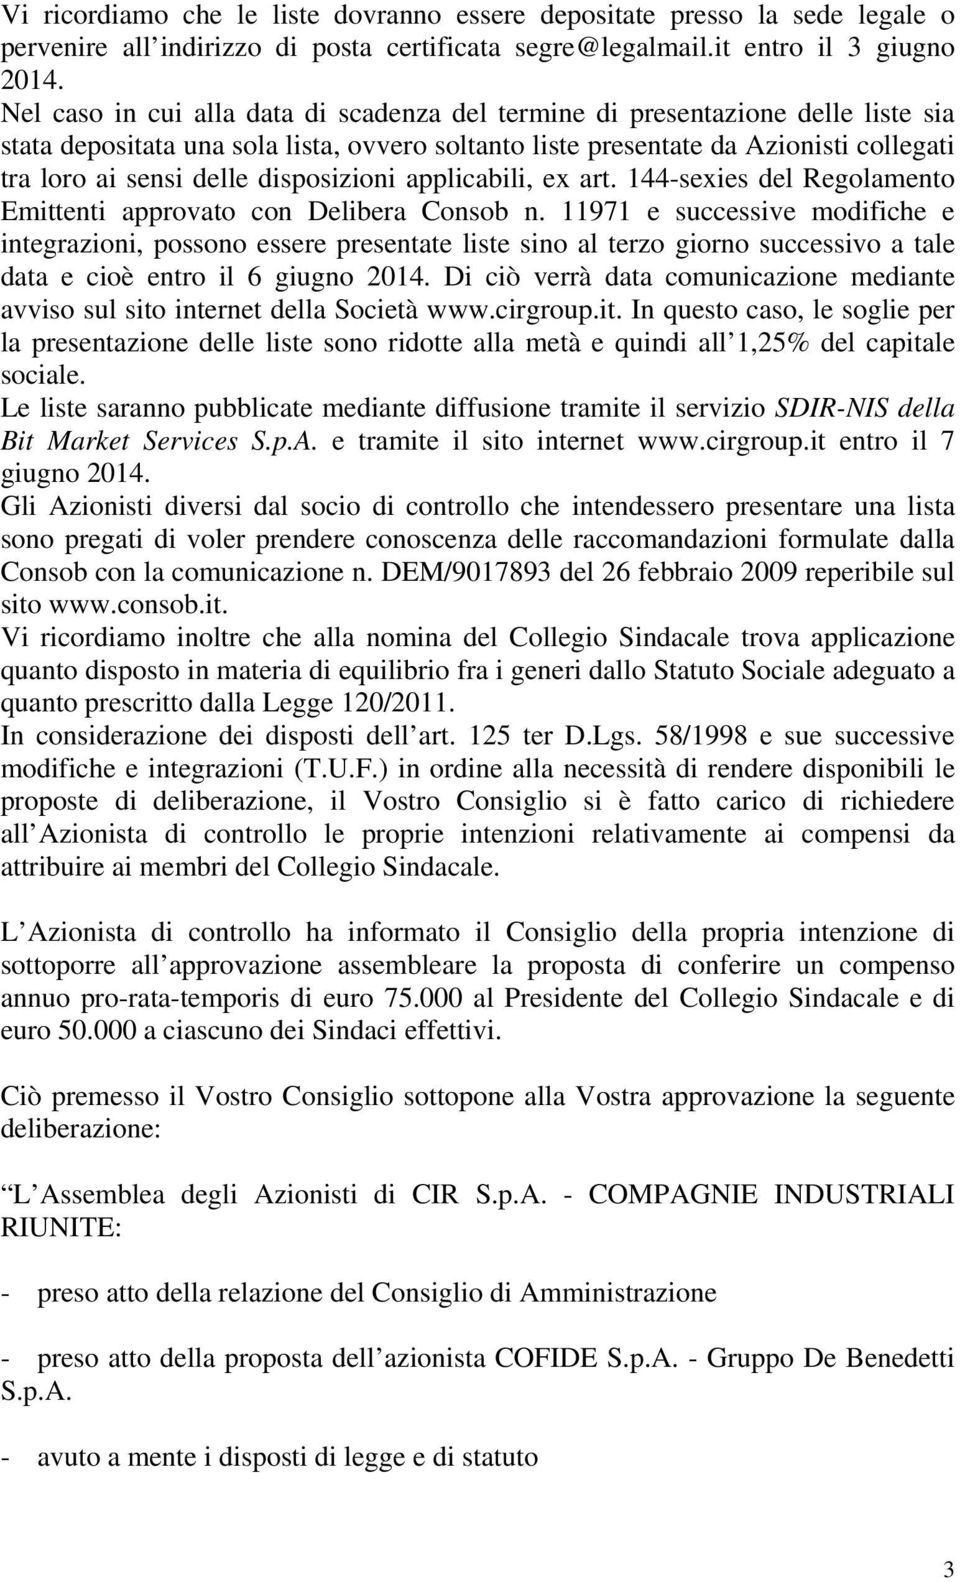 disposizioni applicabili, ex art. 144-sexies del Regolamento Emittenti approvato con Delibera Consob n.